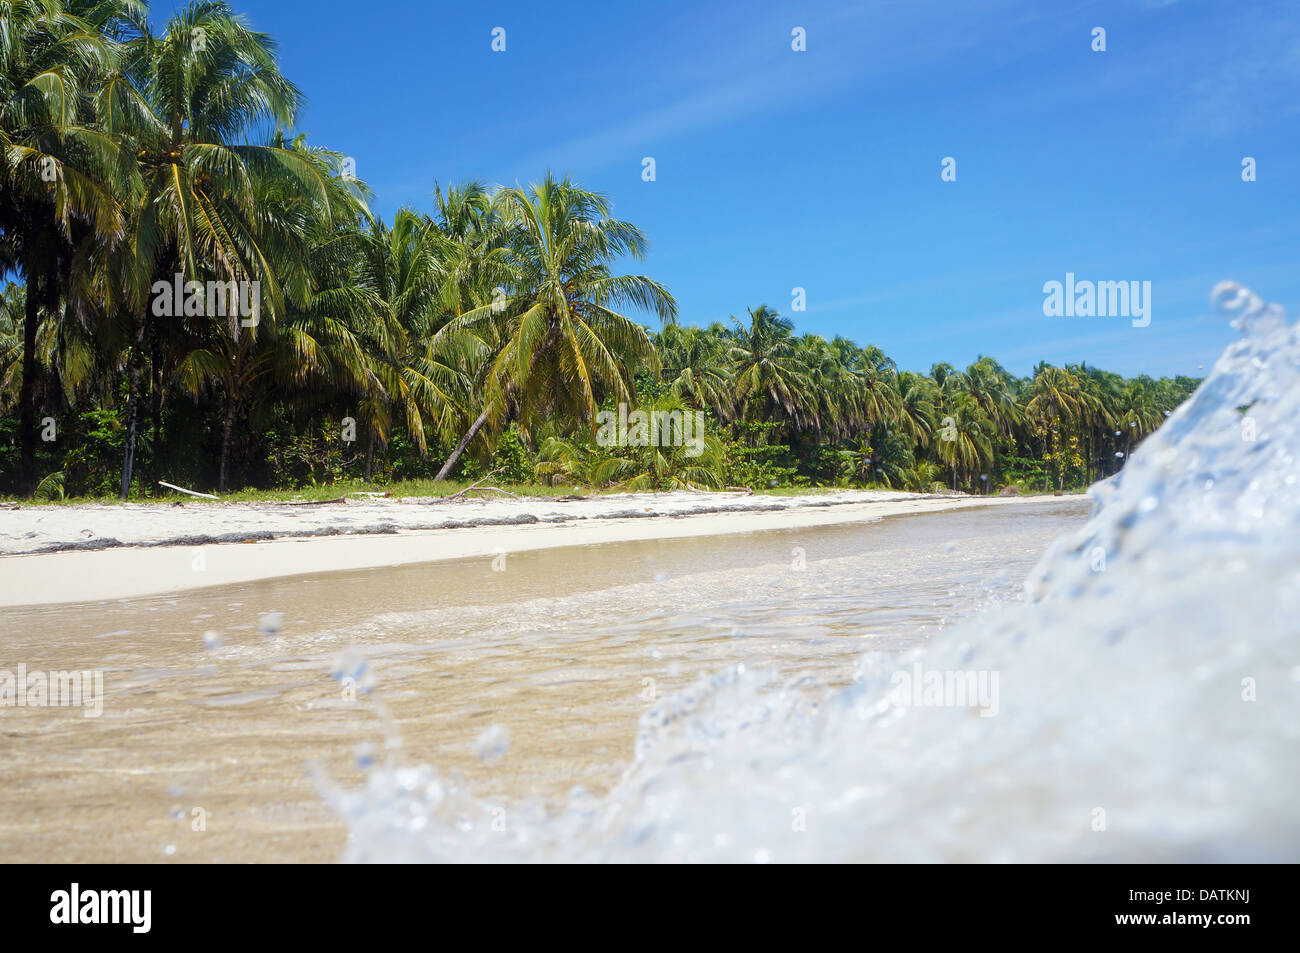 Ondata di schiantarsi su di una spiaggia di sabbia con splendida vegetazione tropicale Foto Stock